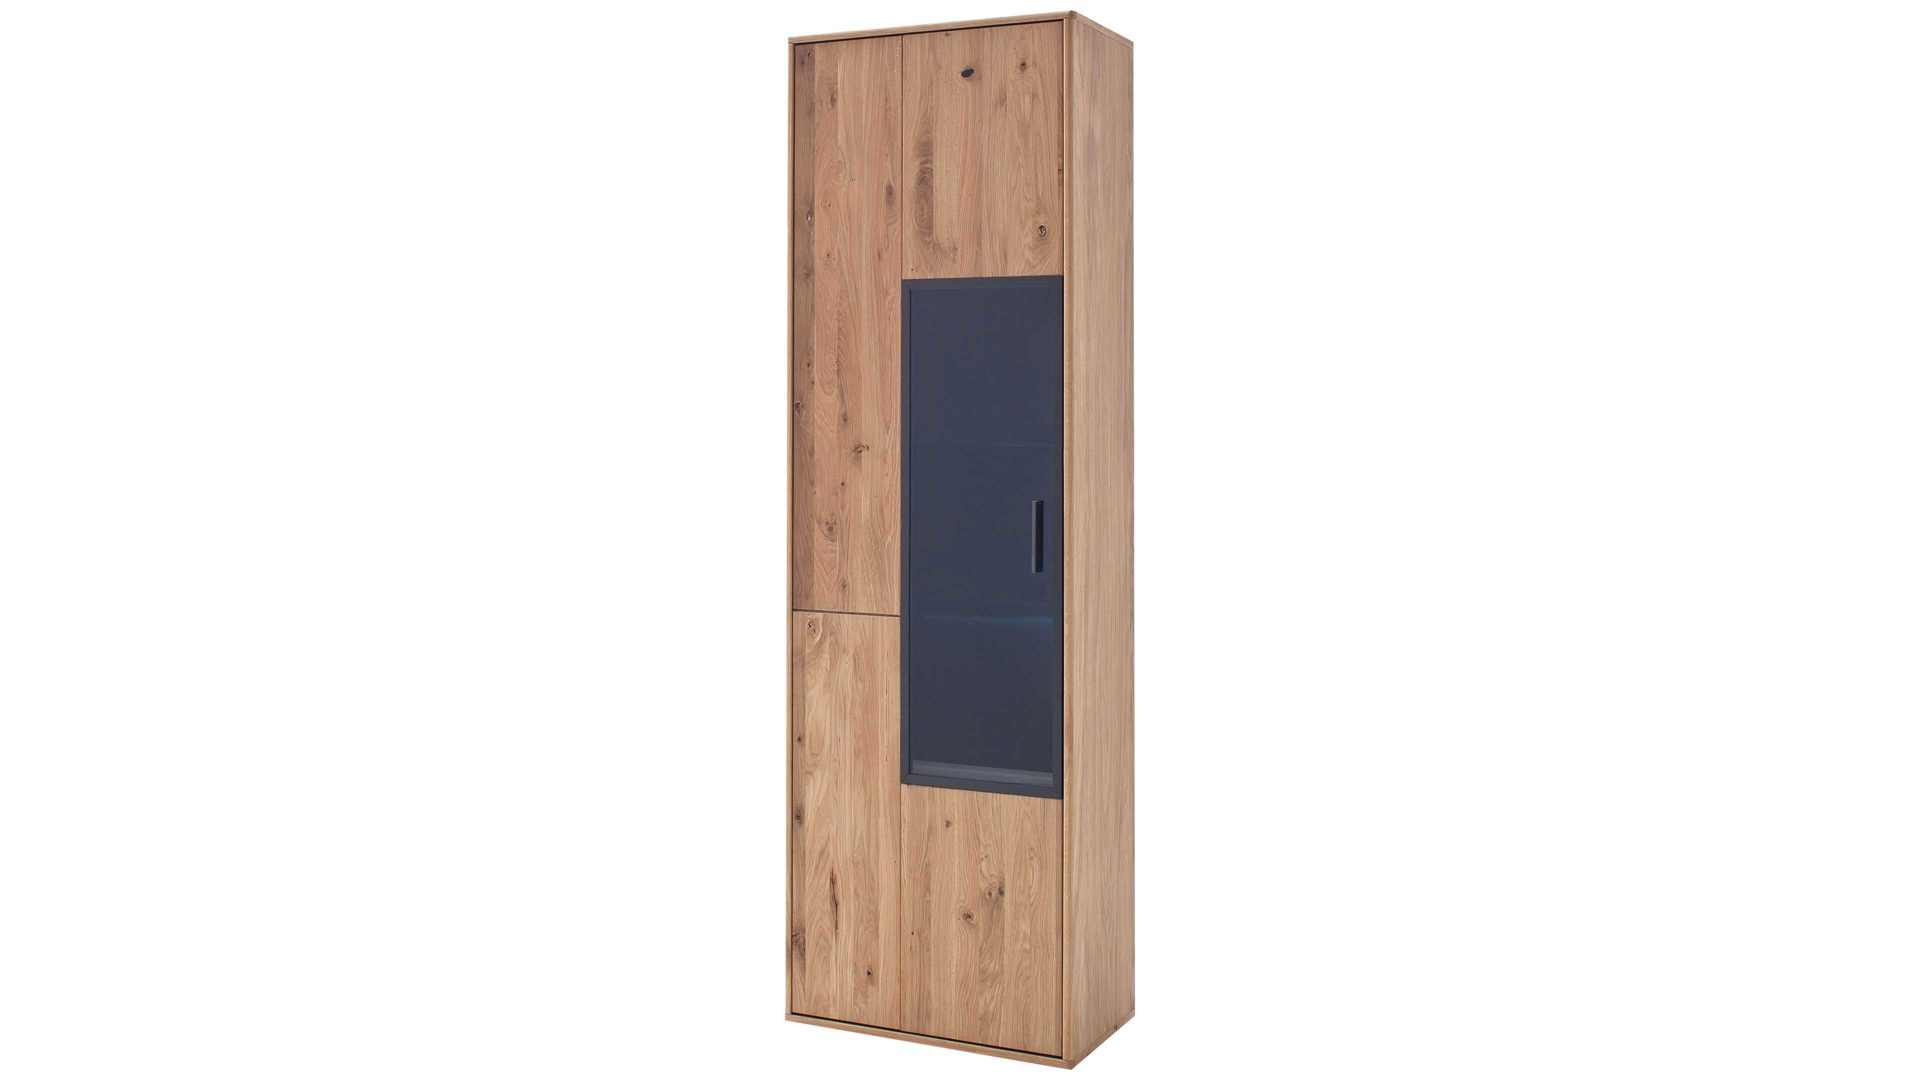 Vitrine Mca furniture aus Holz in Holzfarben Wohnprogramm Portland - Vitrine Asteiche bianco & Anthrazit – eine Tür, Höhe ca. 207 cm